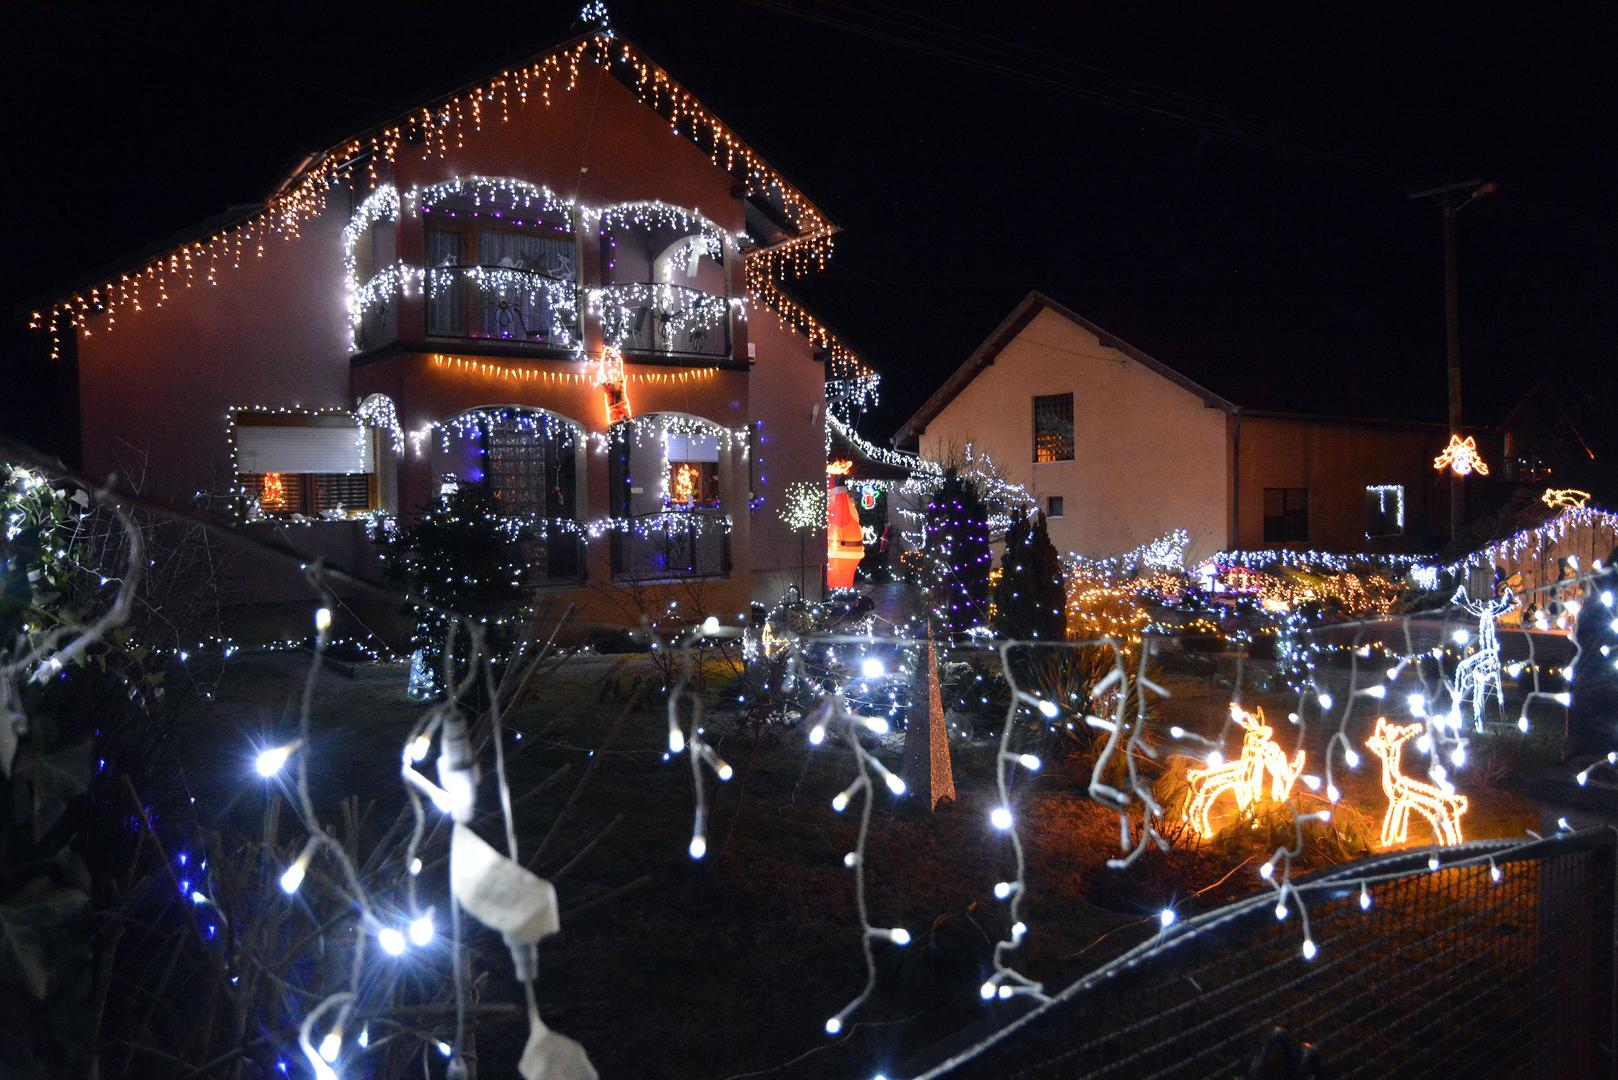 Svakog Božića svjedočimo impresivnim blagdanskim vizualima duž Hrvatske. Nakon božićne bajke obitelji Salaj u Čazmi, još jedna obitelj se pobrinula svojim blagdanskim ukrasima uljepšati cijeli prostor Trnjana u Brodsko Posavskoj županiji, a rezultat je i više nego impresivan. Pogledajte raskošnu božićnu bajku obitelji Dujak osvijetljenu tisućama lampica.